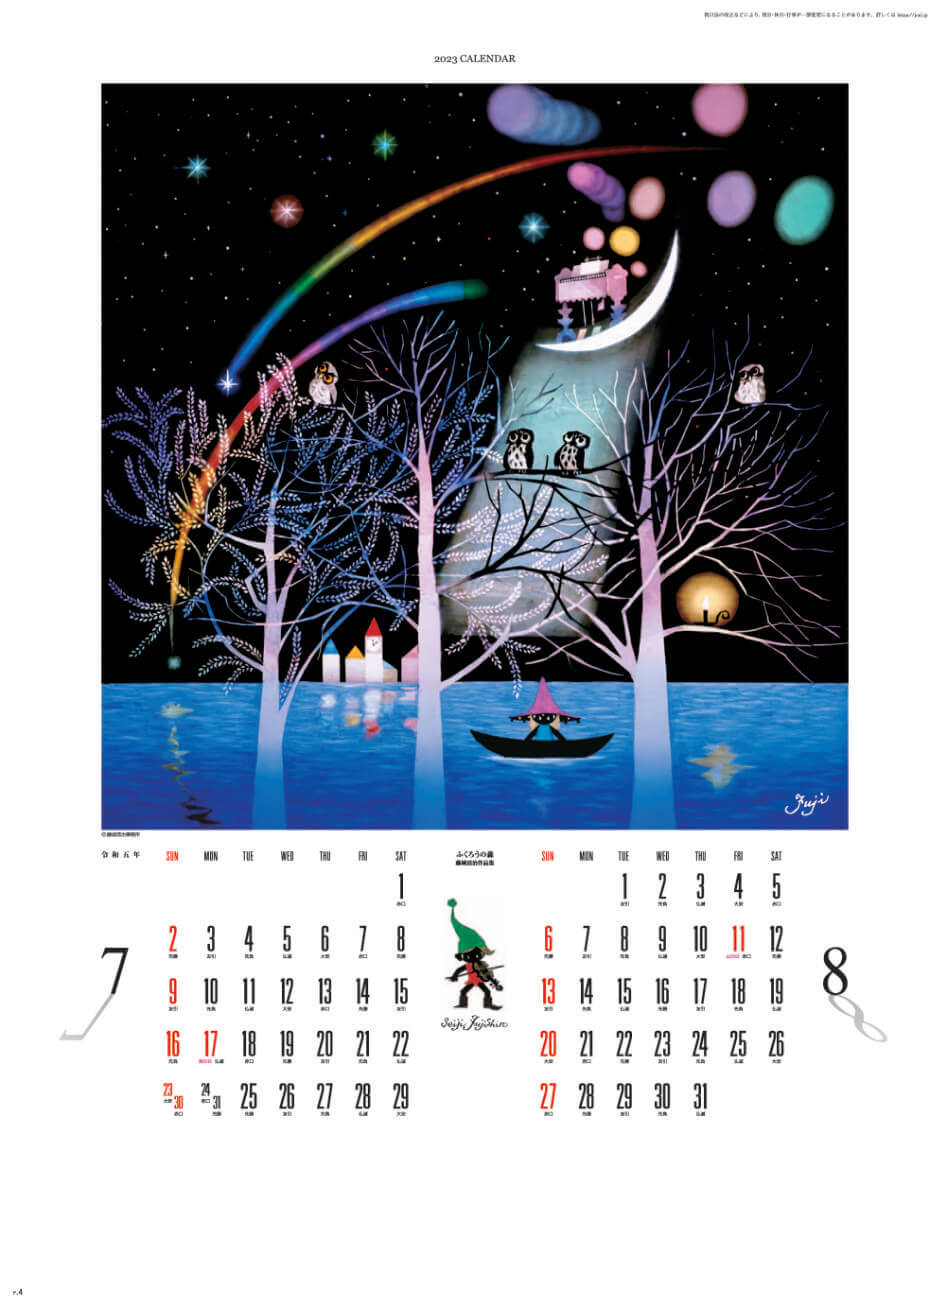 7/8月 ふくろうの森 遠い日の風景から(影絵) 藤城清治 2023年カレンダーの画像